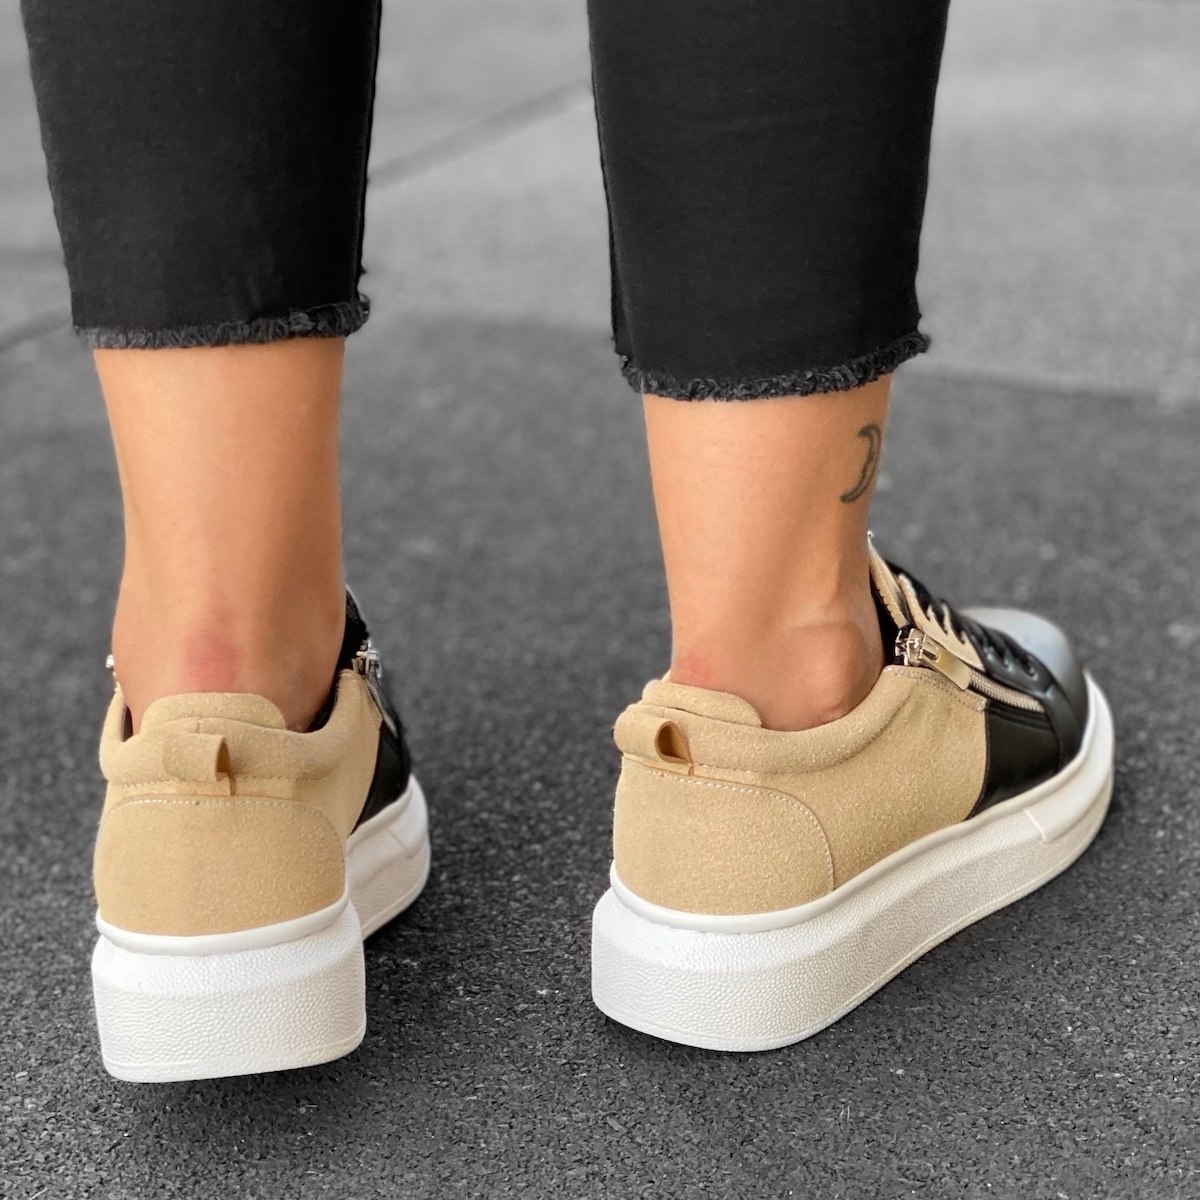 Women's Hype Sole Zipped Style Sneakers In Cream-Black